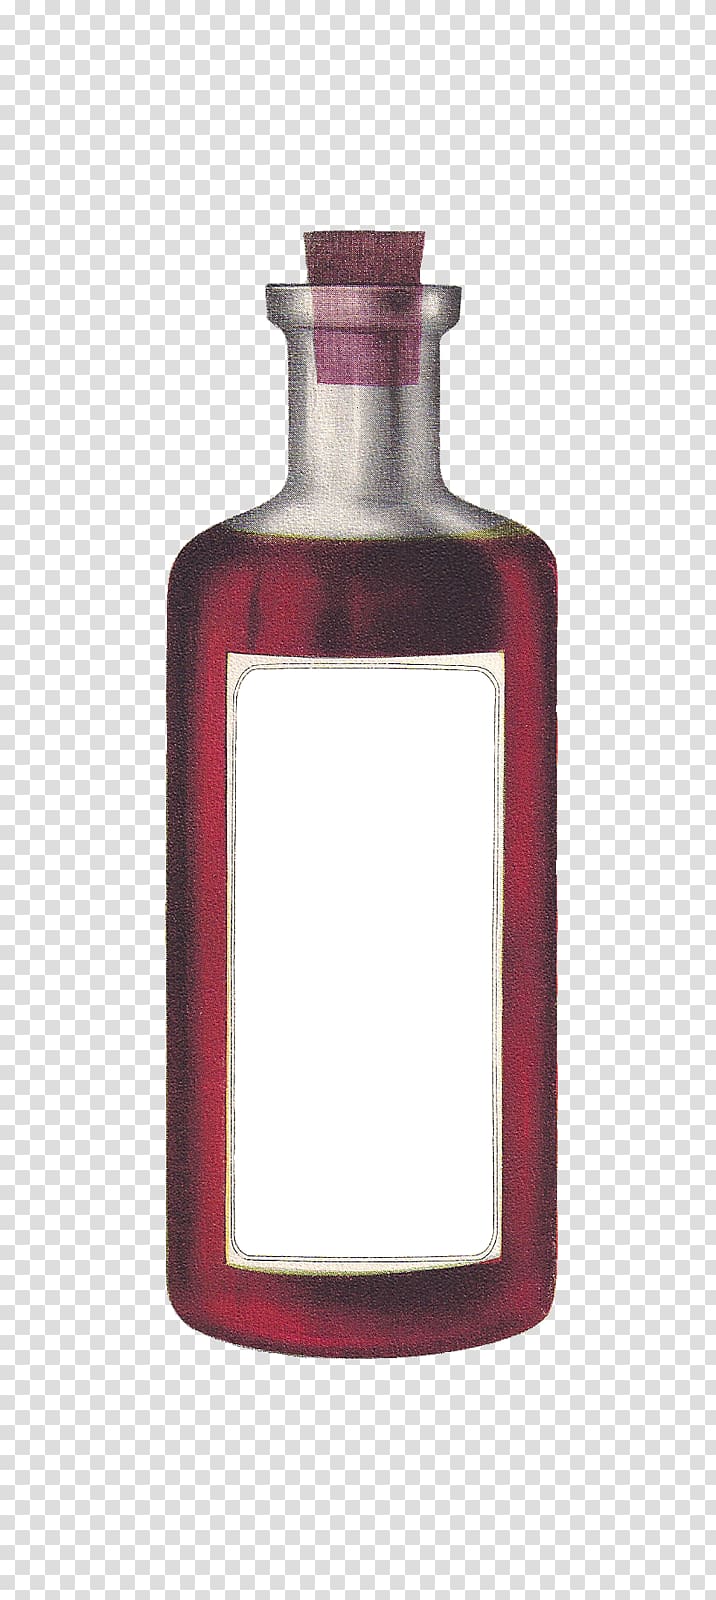 Glass bottle Label Frog, blank bottle transparent background PNG clipart